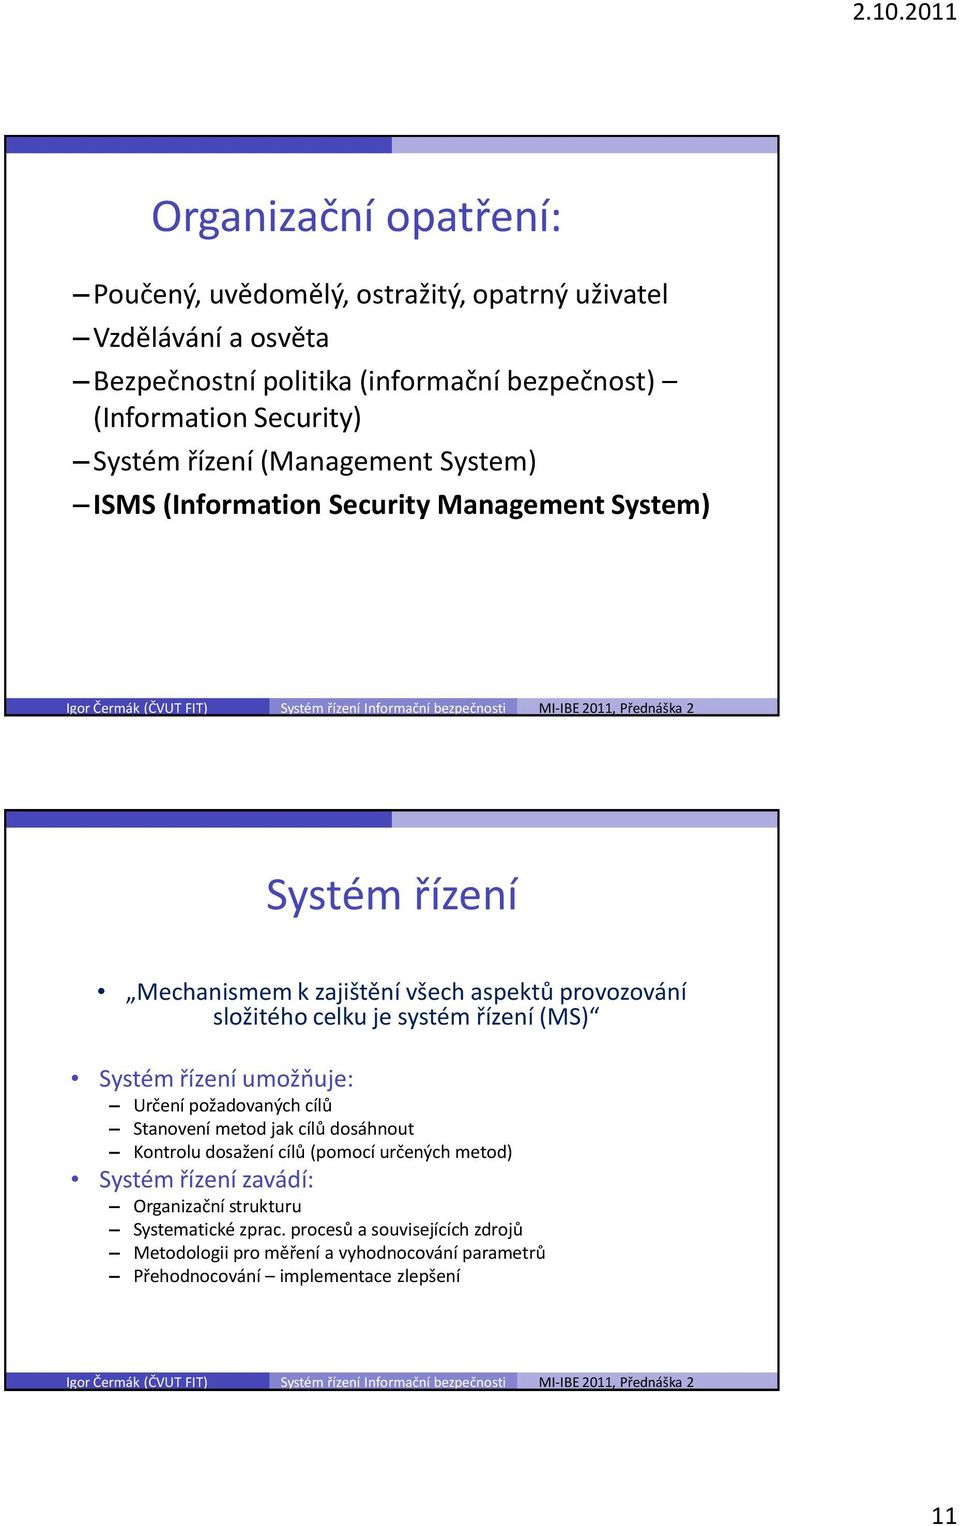 systém řízení (MS) Systém řízení umožňuje: Určení požadovaných cílů Stanovení metod jak cílů dosáhnout Kontrolu dosažení cílů (pomocí určených metod) Systém řízení